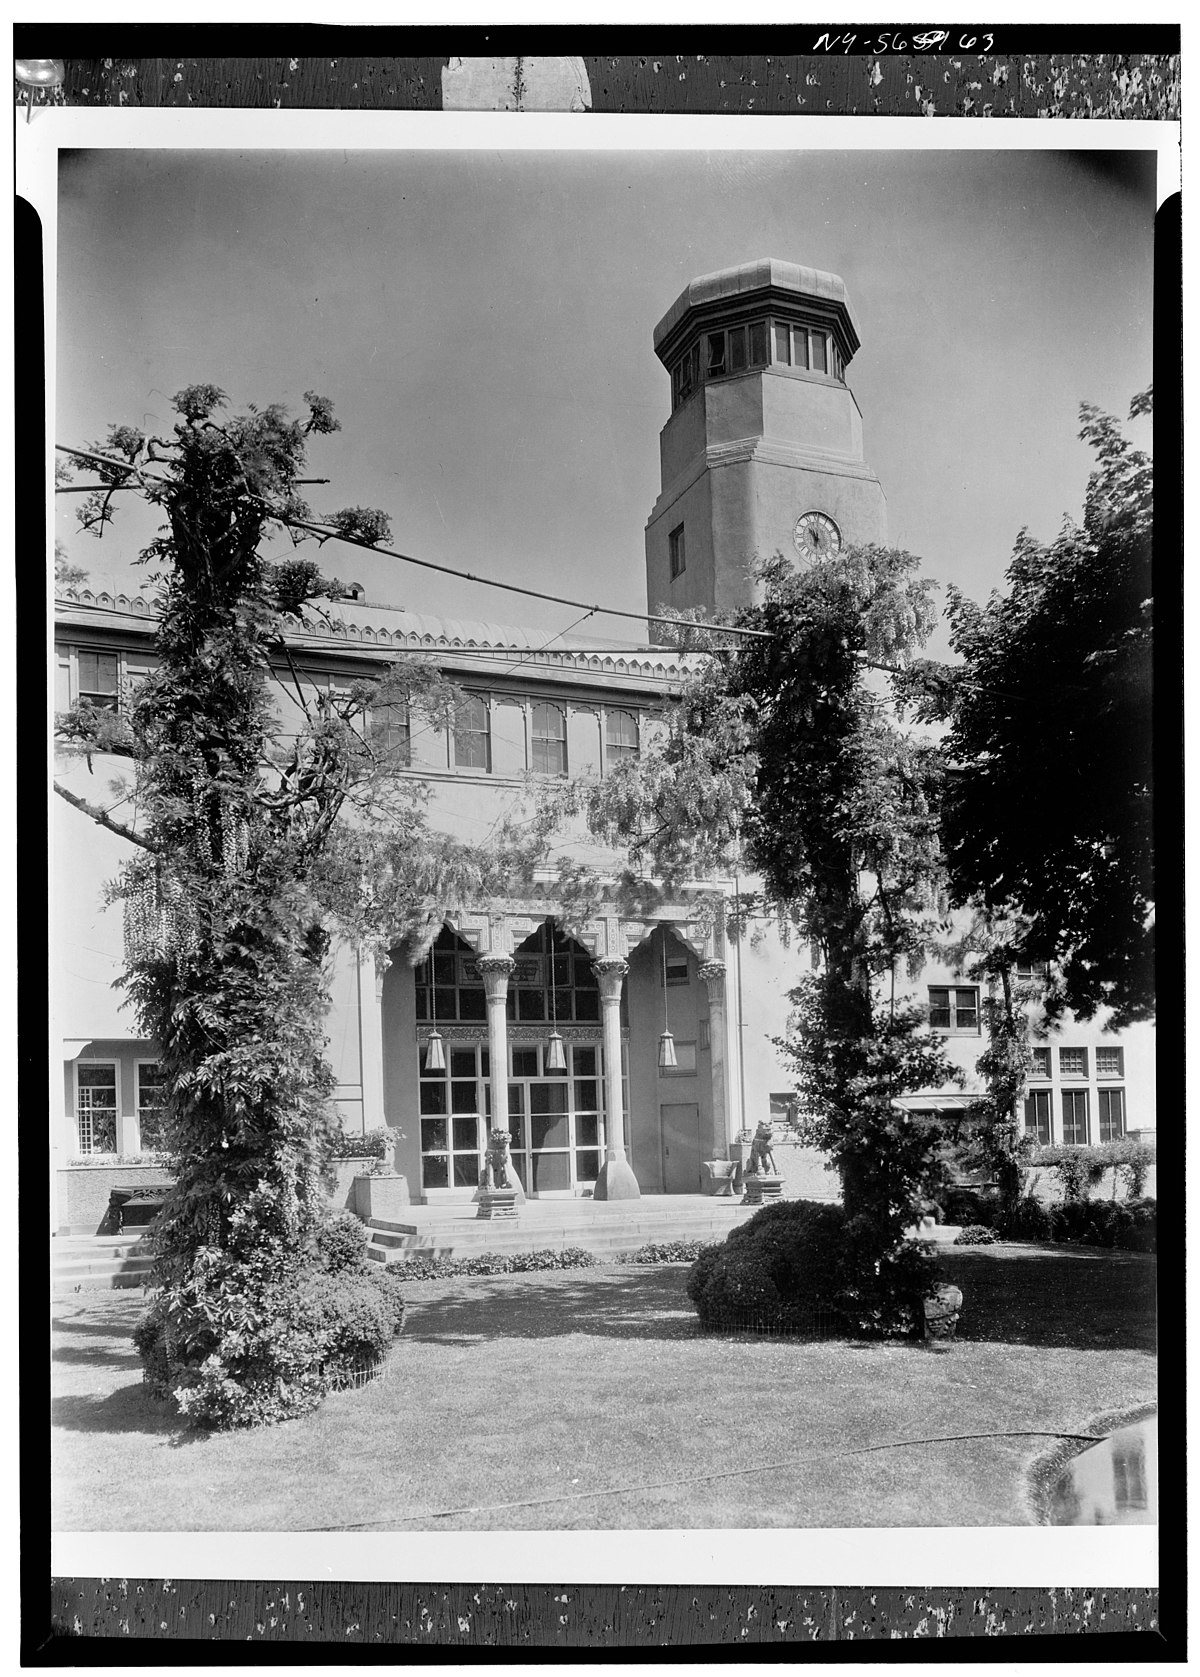 Laurelton Hall - Wikipedia